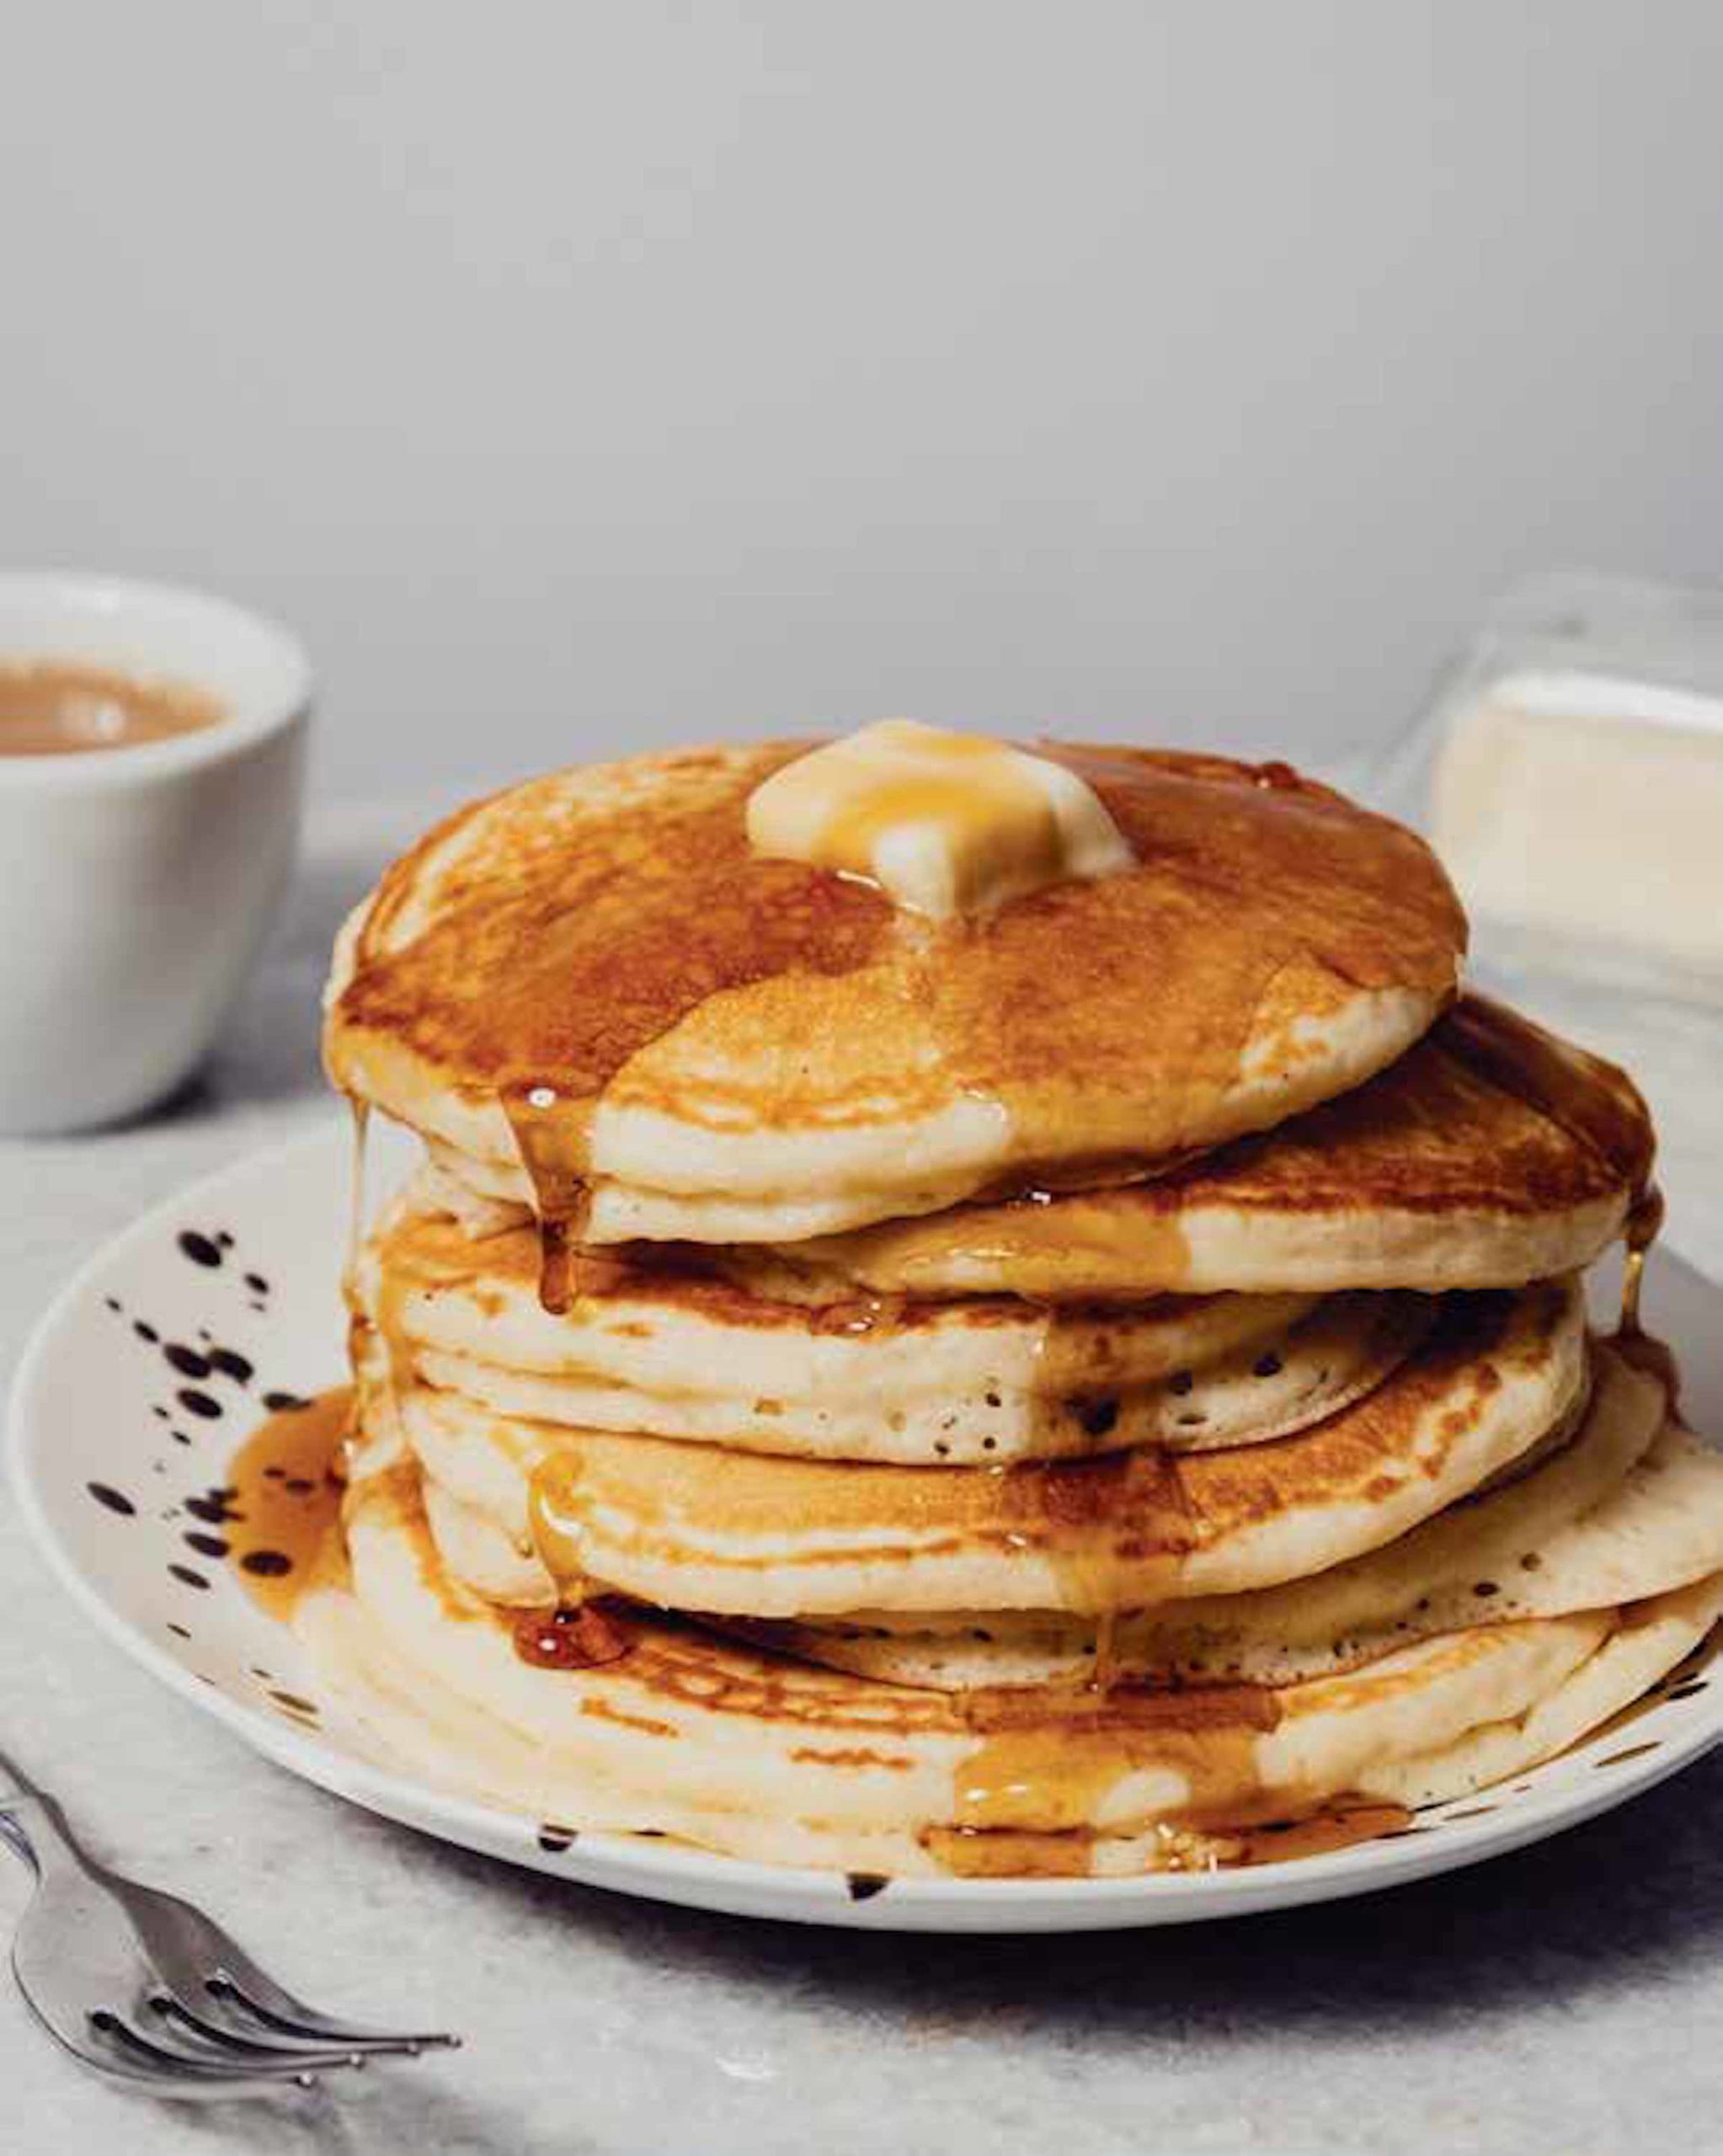 Sheet-Pan Pancakes Recipe, Ree Drummond